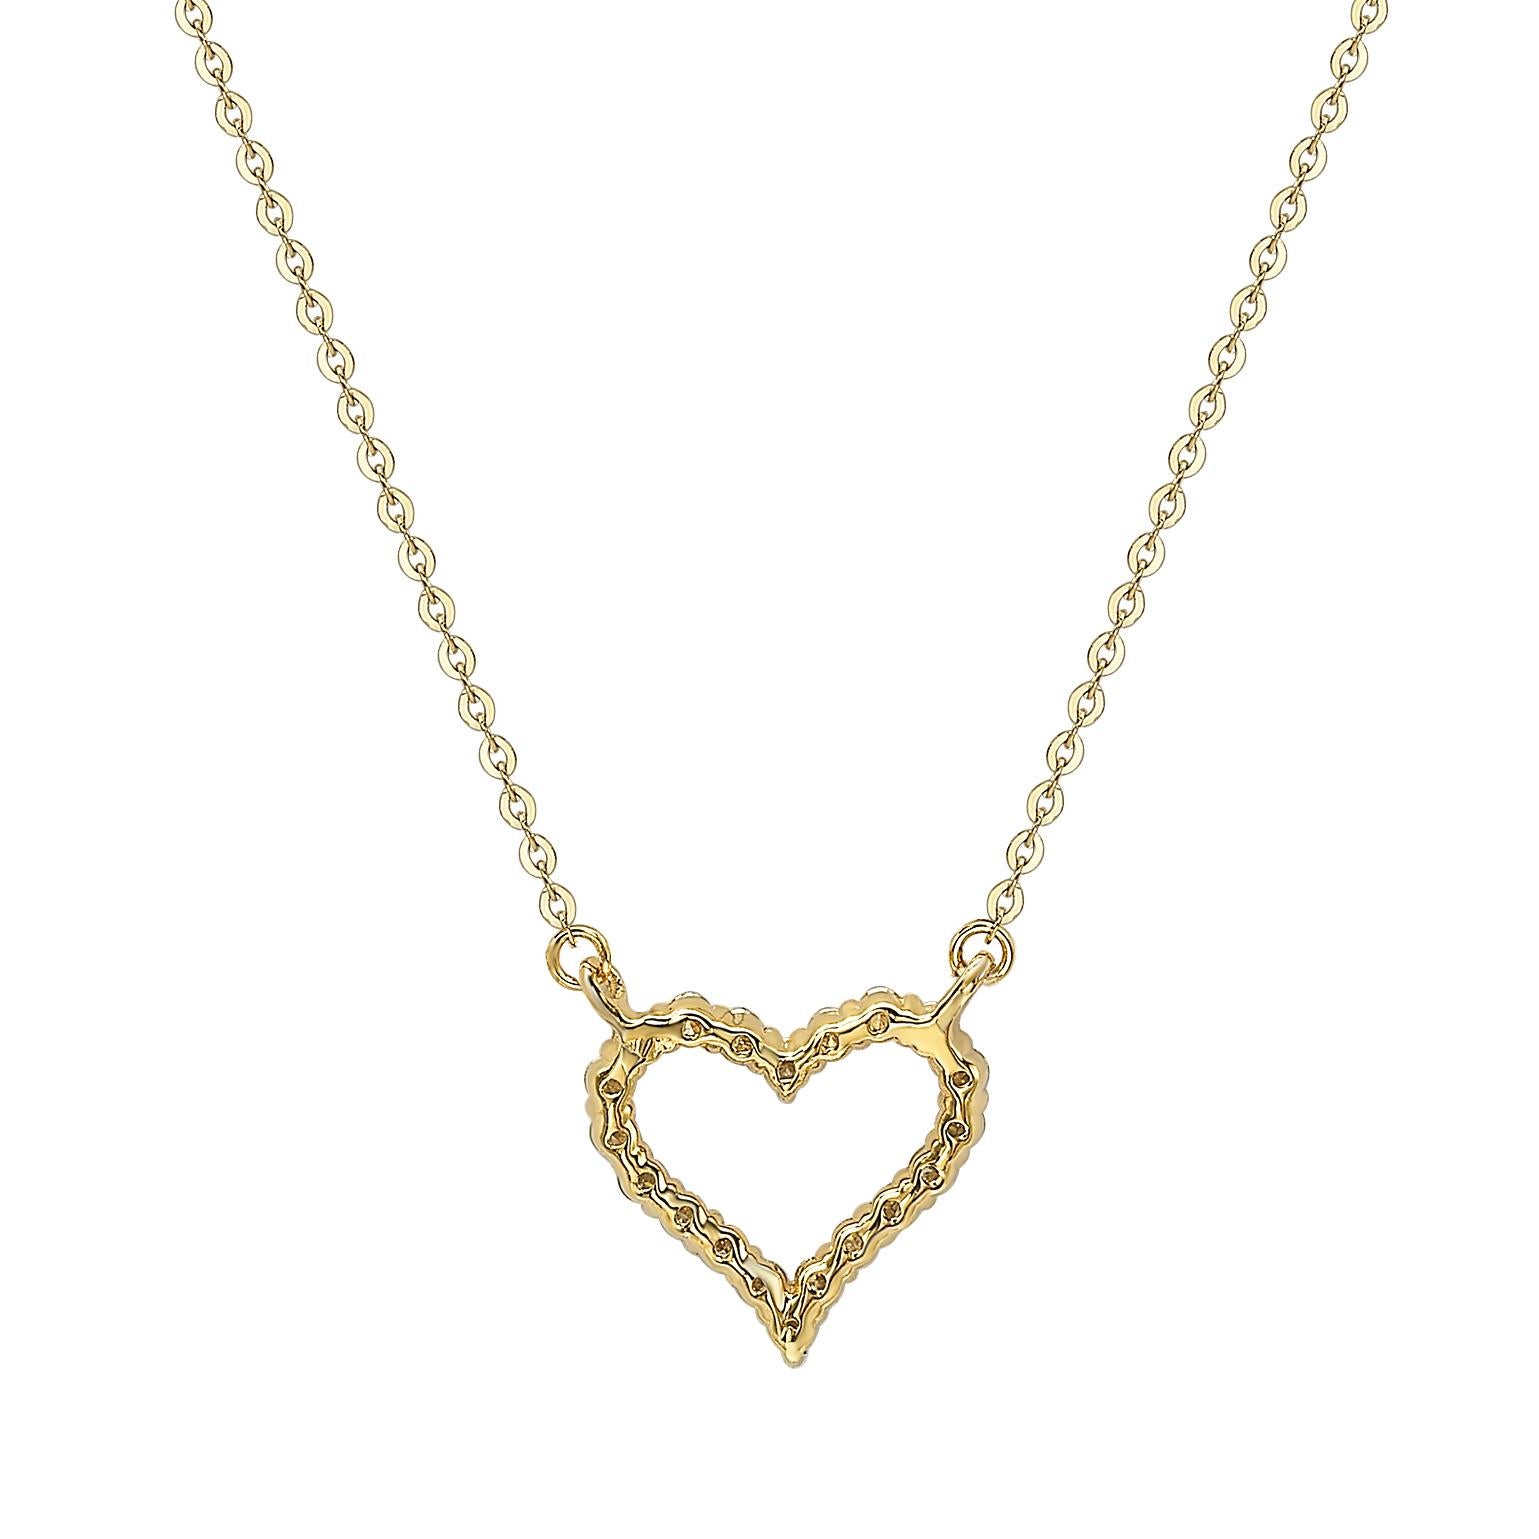 Diese atemberaubende Herz-Halskette von Suzy Levian besteht aus natürlichen Diamanten, die von Hand in 14-karätiges Gelbgold gefasst wurden. Es ist das perfekte Geschenk, um jemandem mitzuteilen, dass man an ihn oder sie denkt. Jede Herz-Halskette